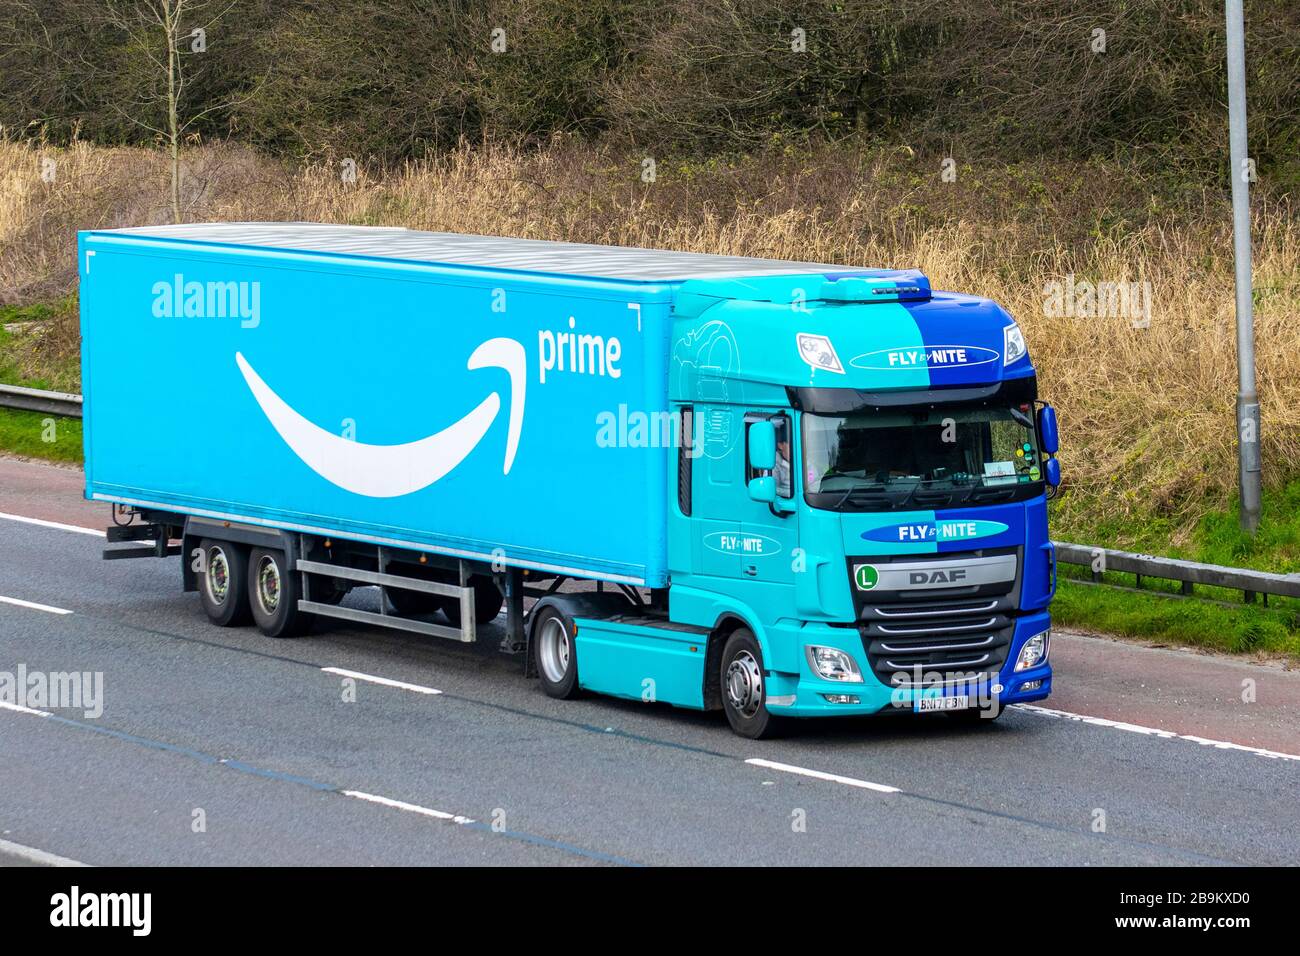 Amazon Prime-LKW-Transportfahrzeuge, LKW, Transport, LKW, Frachtführer,  Fahrzeug, europäische kommerzielle Transportindustrie, M61 in Manchester,  Großbritannien Stockfotografie - Alamy